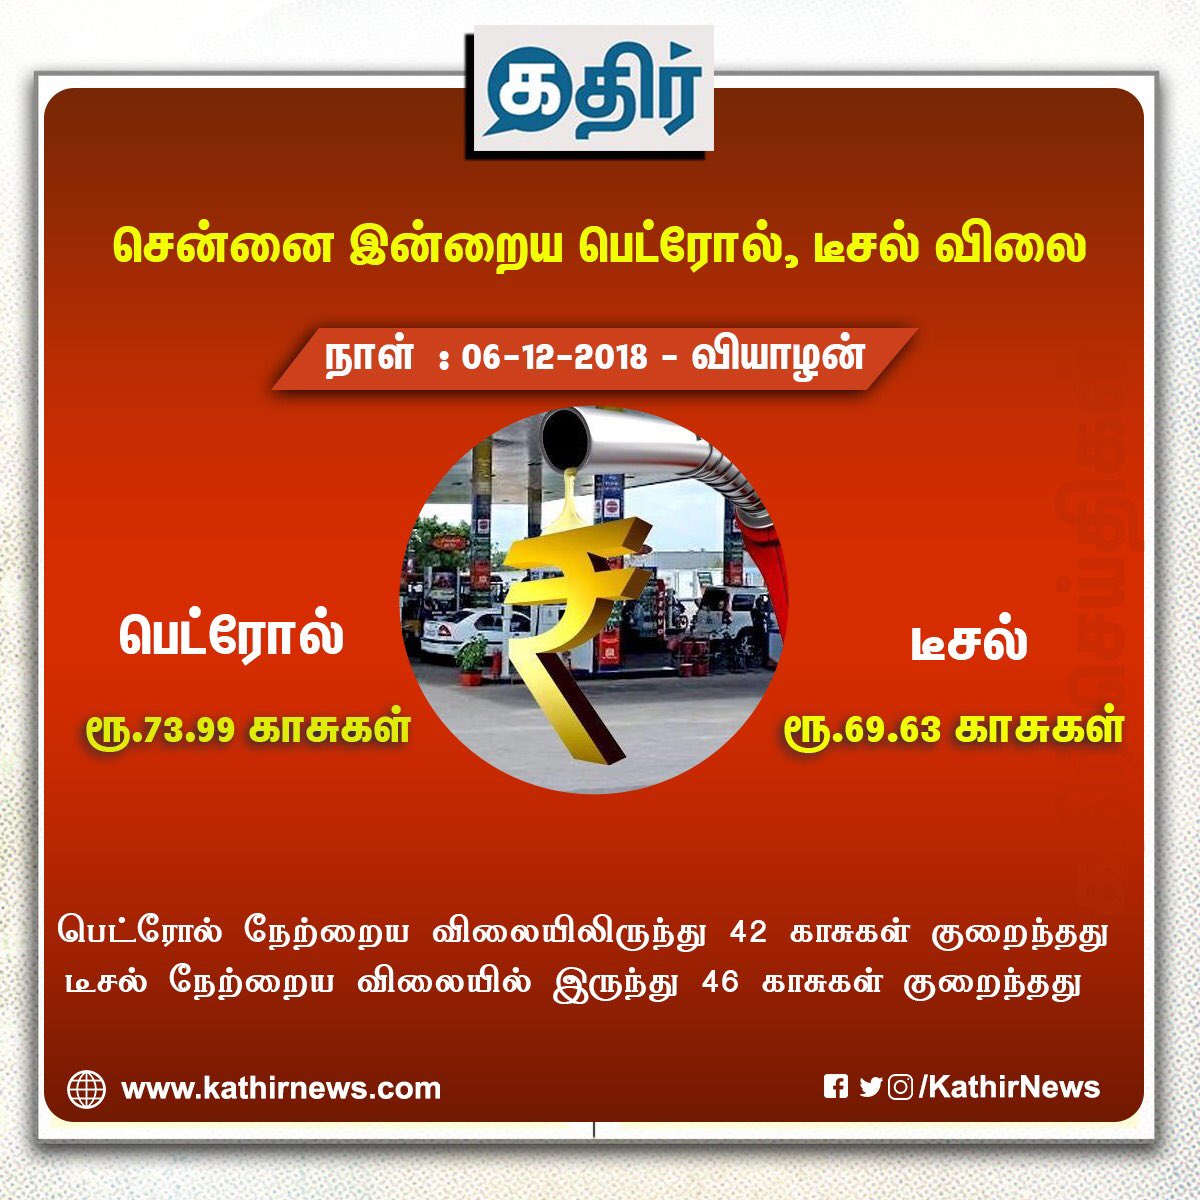 சென்னையில் பெட்ரோல் விலை லிட்டருக்கு ₹73.99 காசுகள். டீசல் விலை லிட்டருக்கு ₹69.63 காசுகள்.

• பெட்ரோல் நேற்றைய விலையிலிருந்து ₹42 காசுகள் குறைந்தது.

• டீசல் நேற்றைய விலையில் இருந்து ₹46 காசுகள் குறைந்தது.

#Petrol #Diesel #FuelPriceCut #Chennai